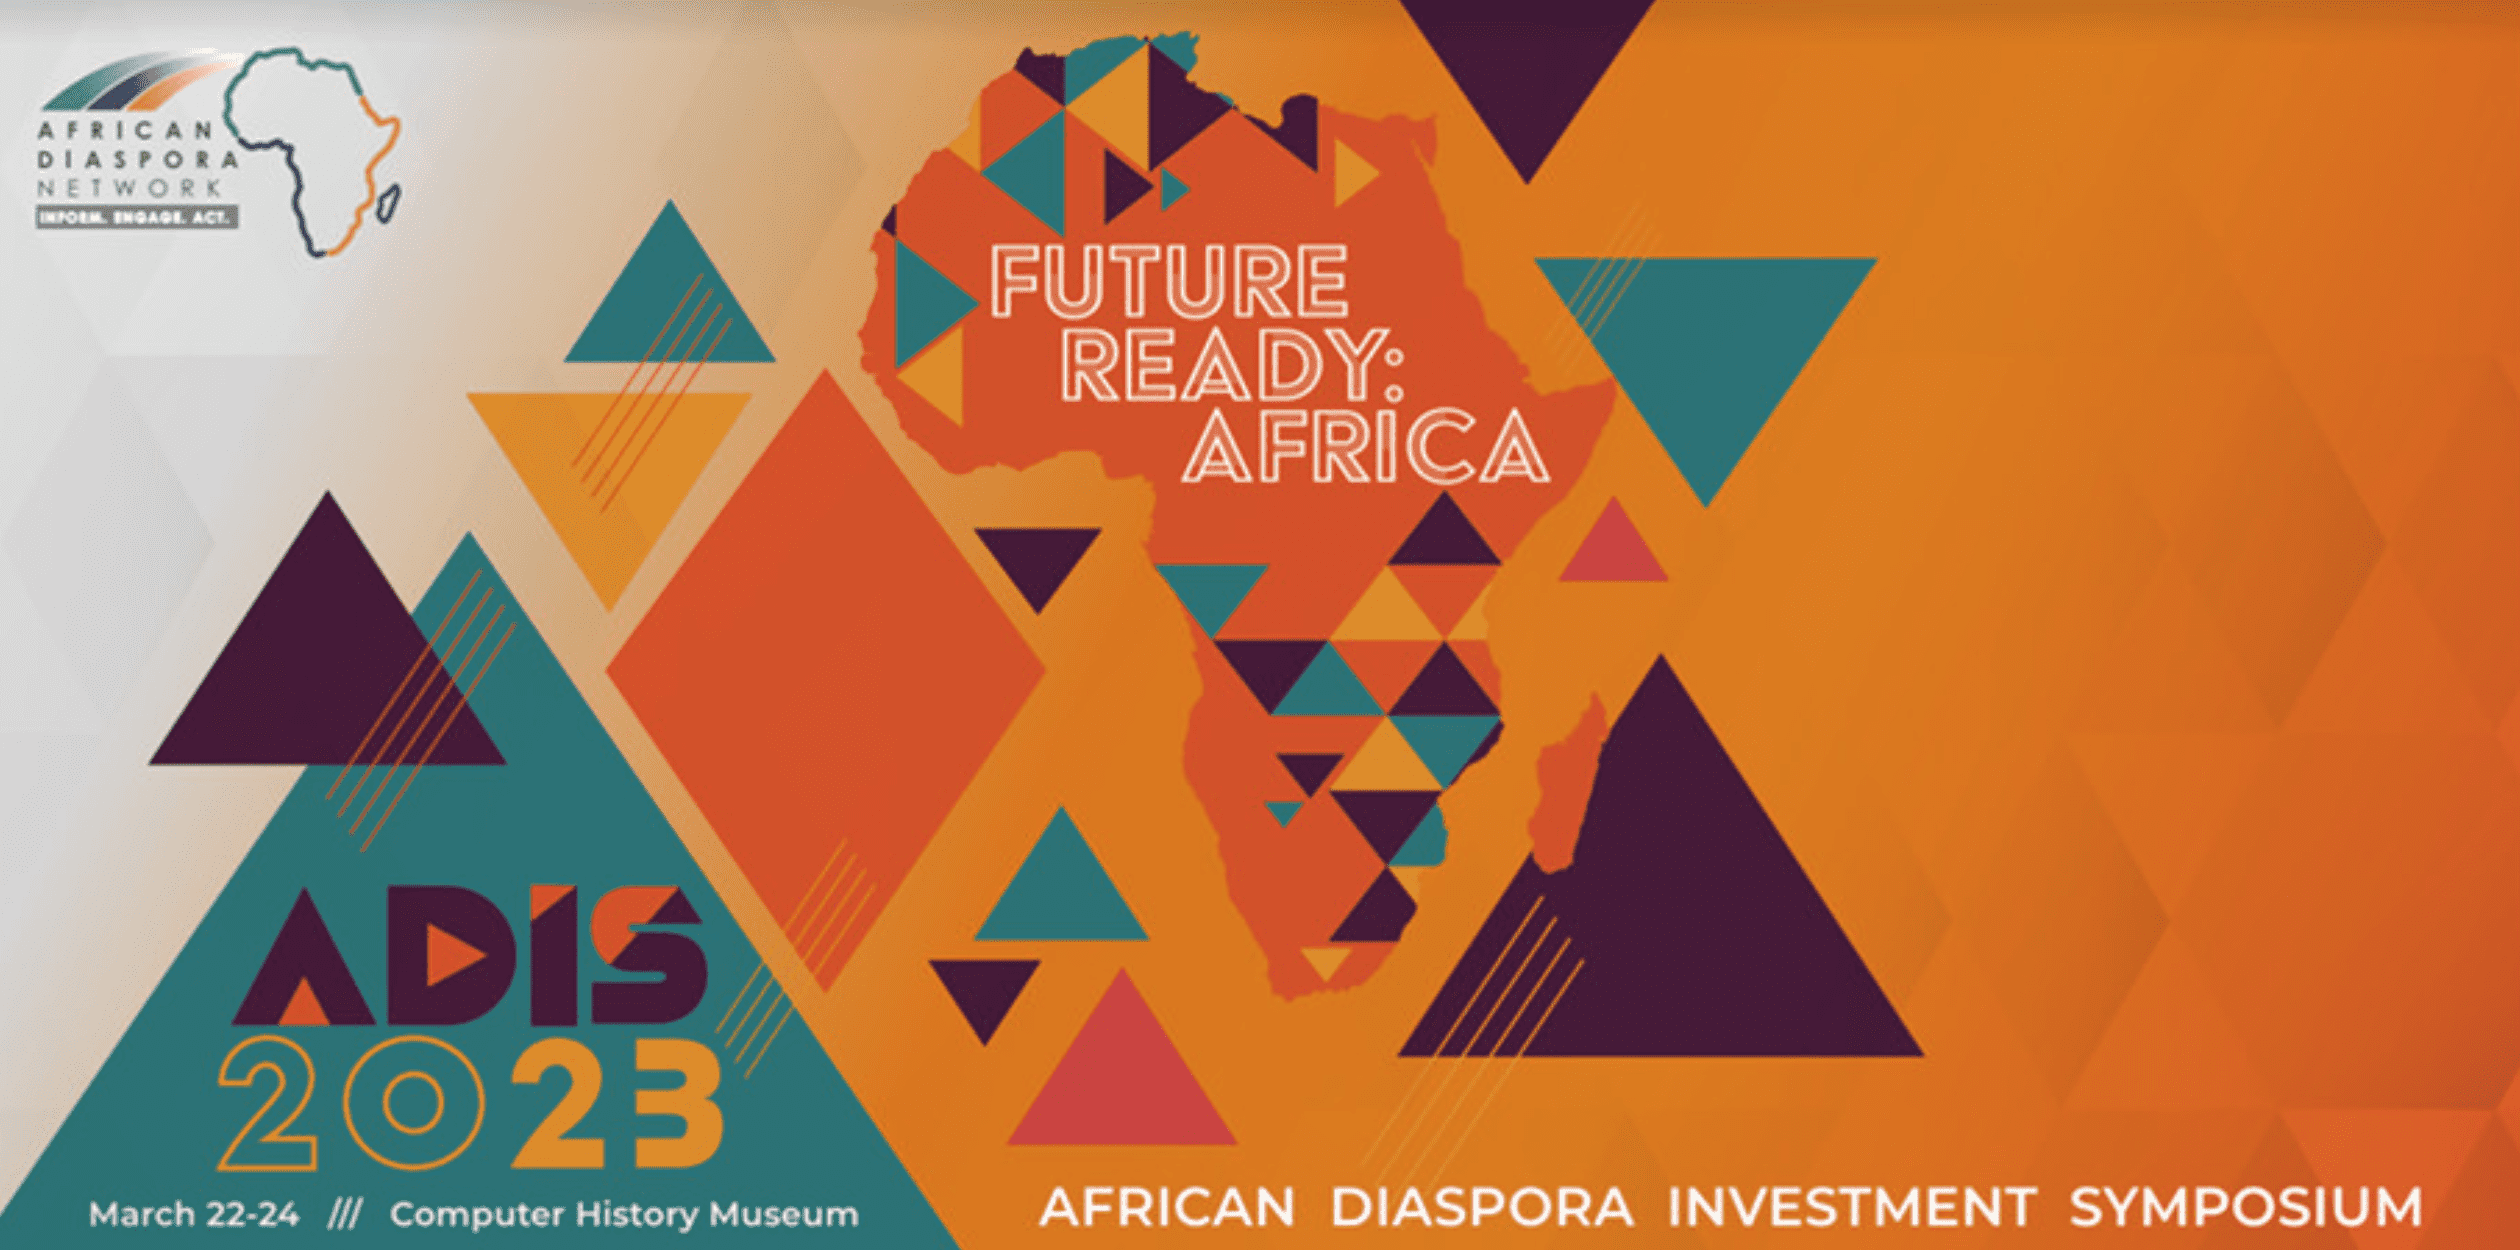 African Diaspora Investment Symposium NextBillion